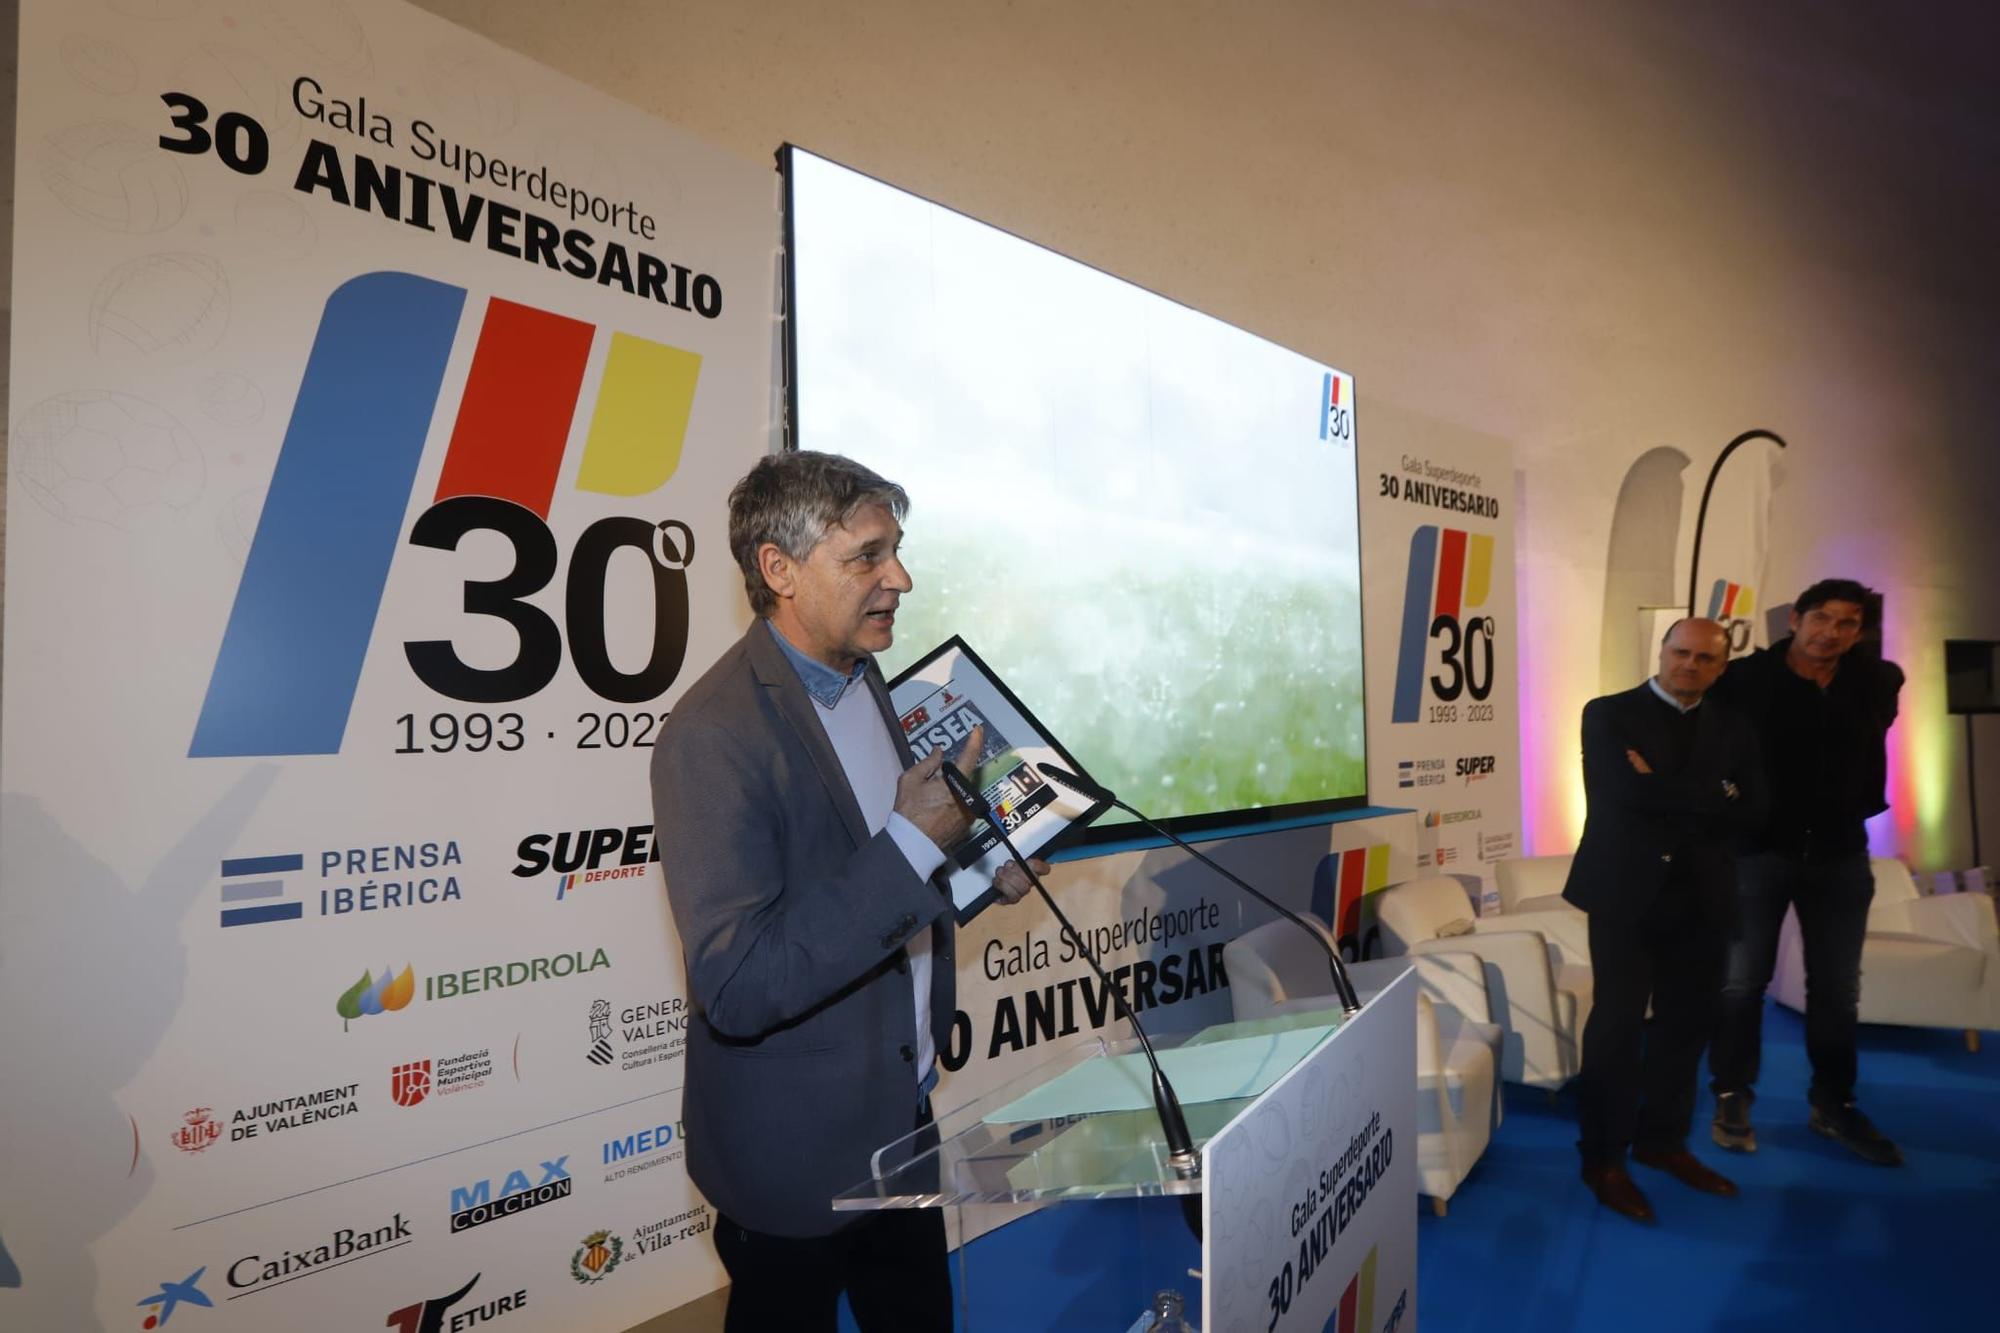 Las mejores fotos de la Gala Superdeporte 30 Aniversario